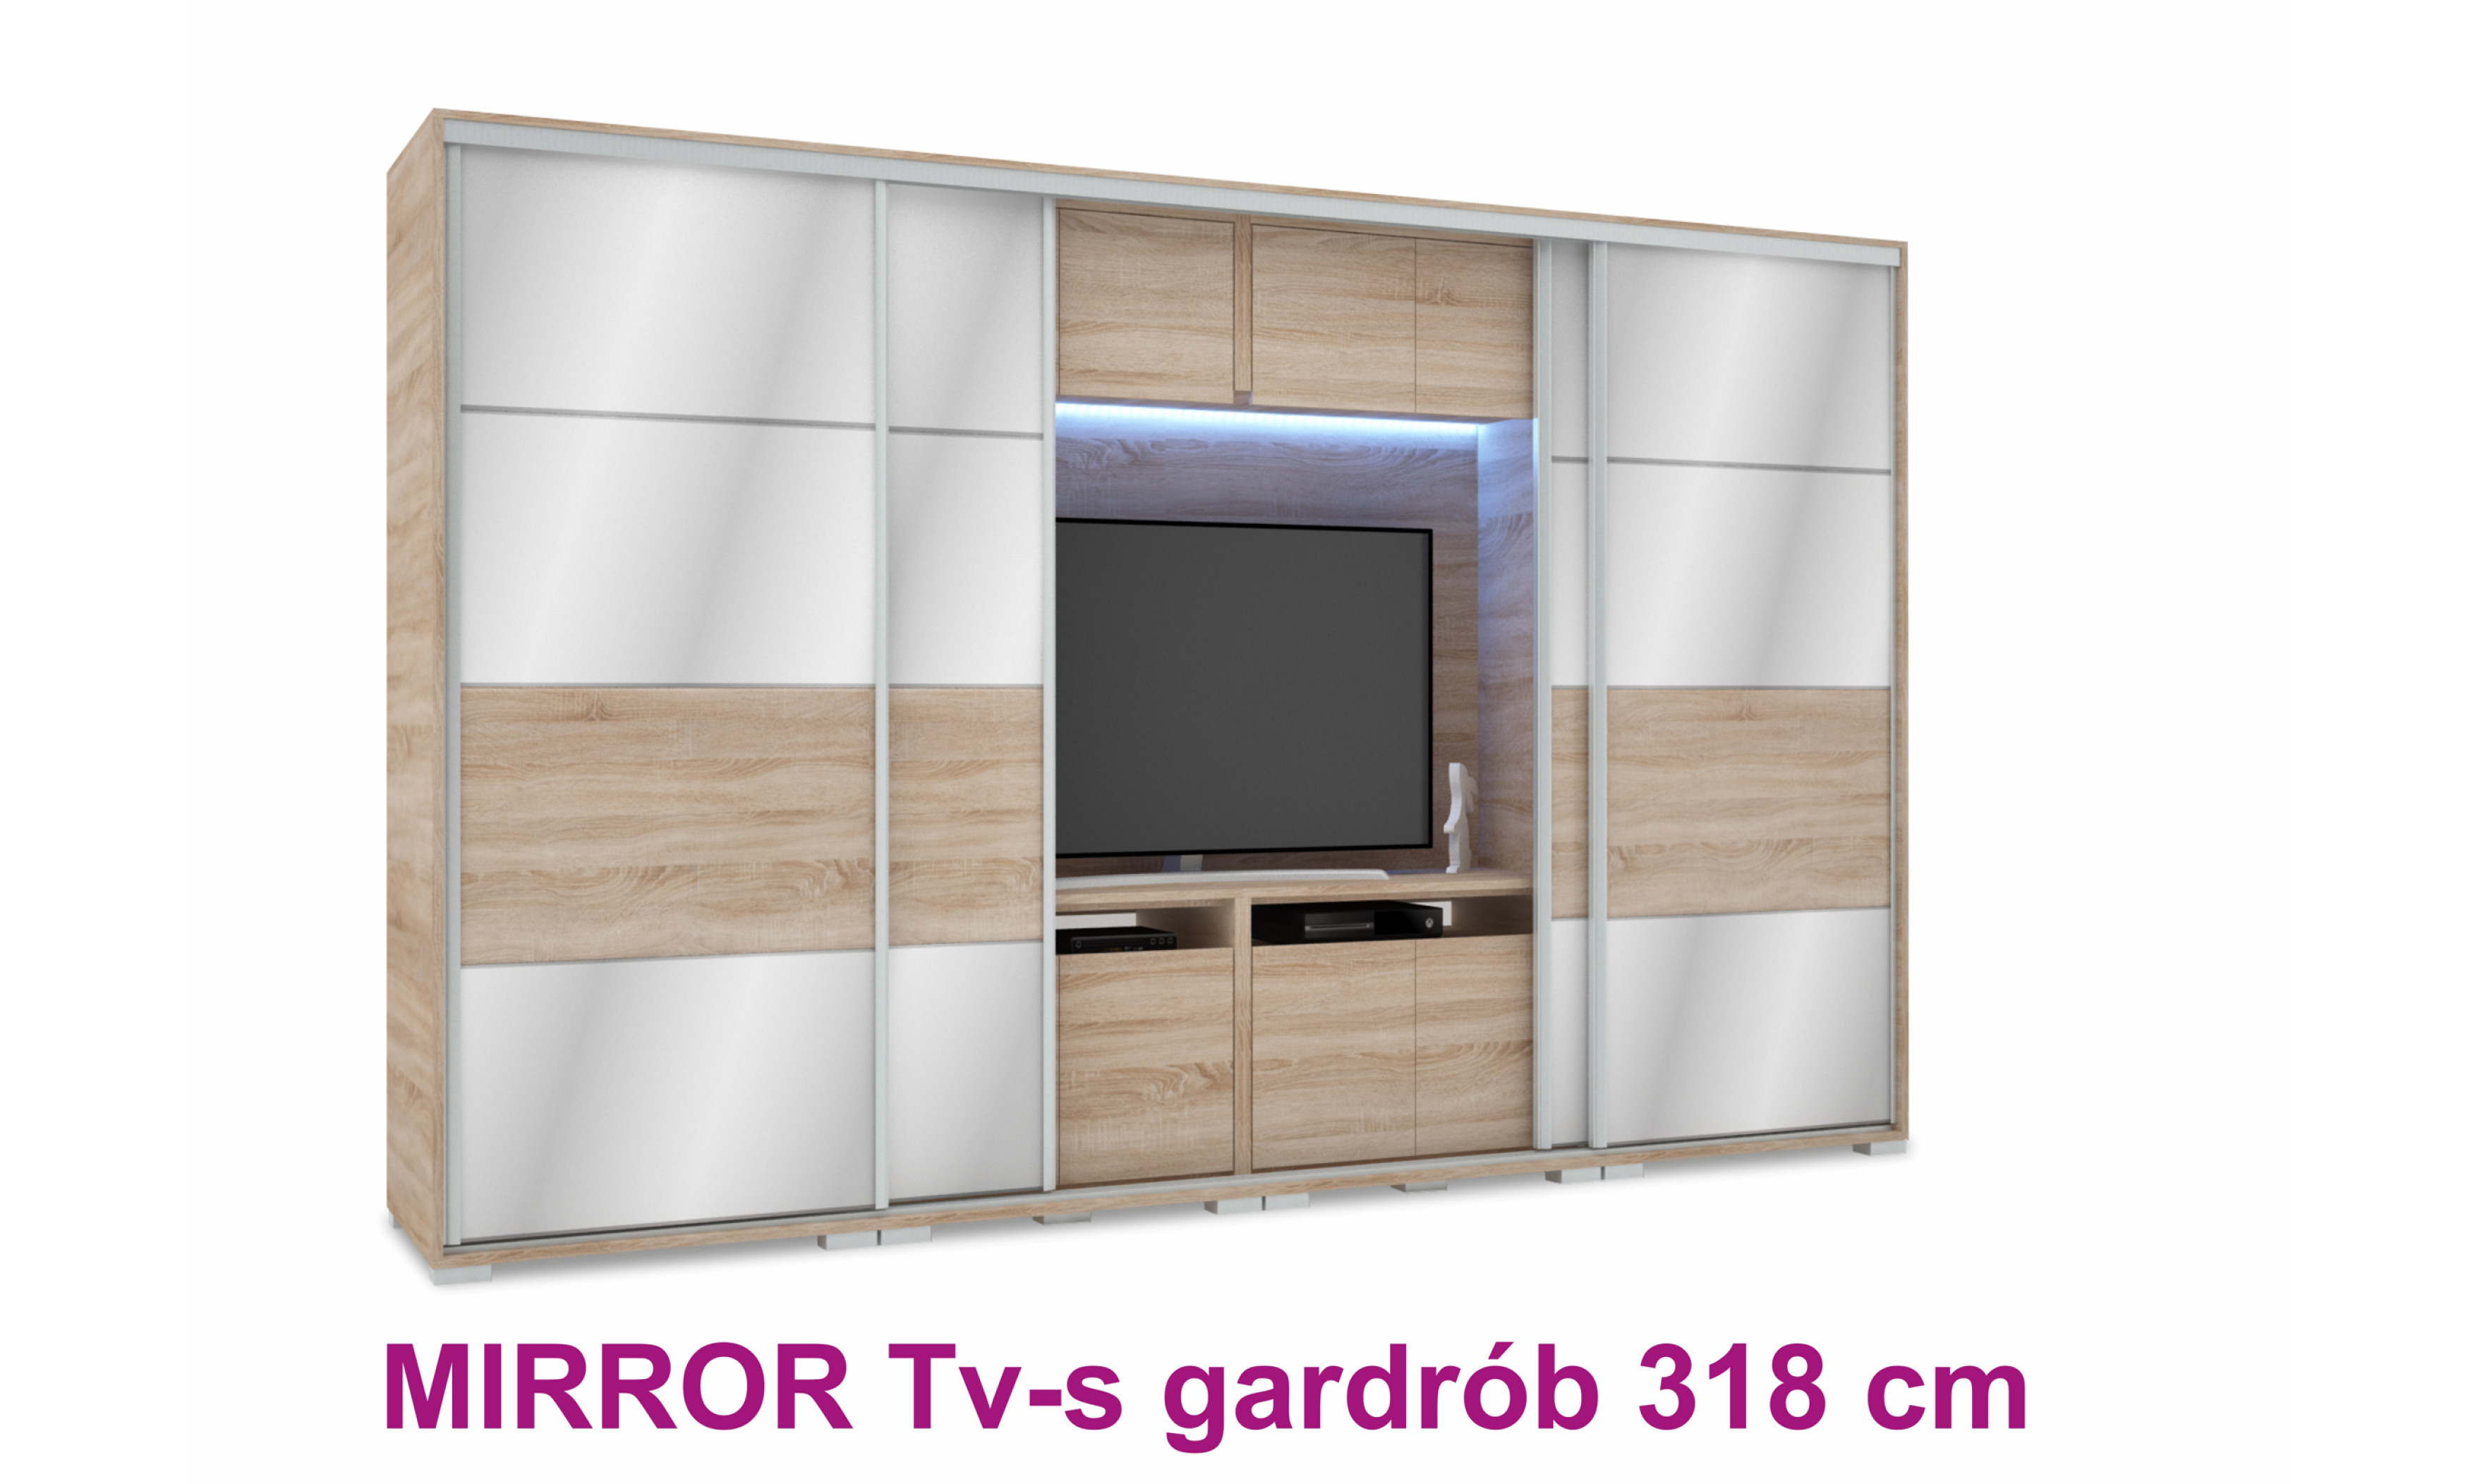 Mirror Tv-s tolóajtós gardrób 318